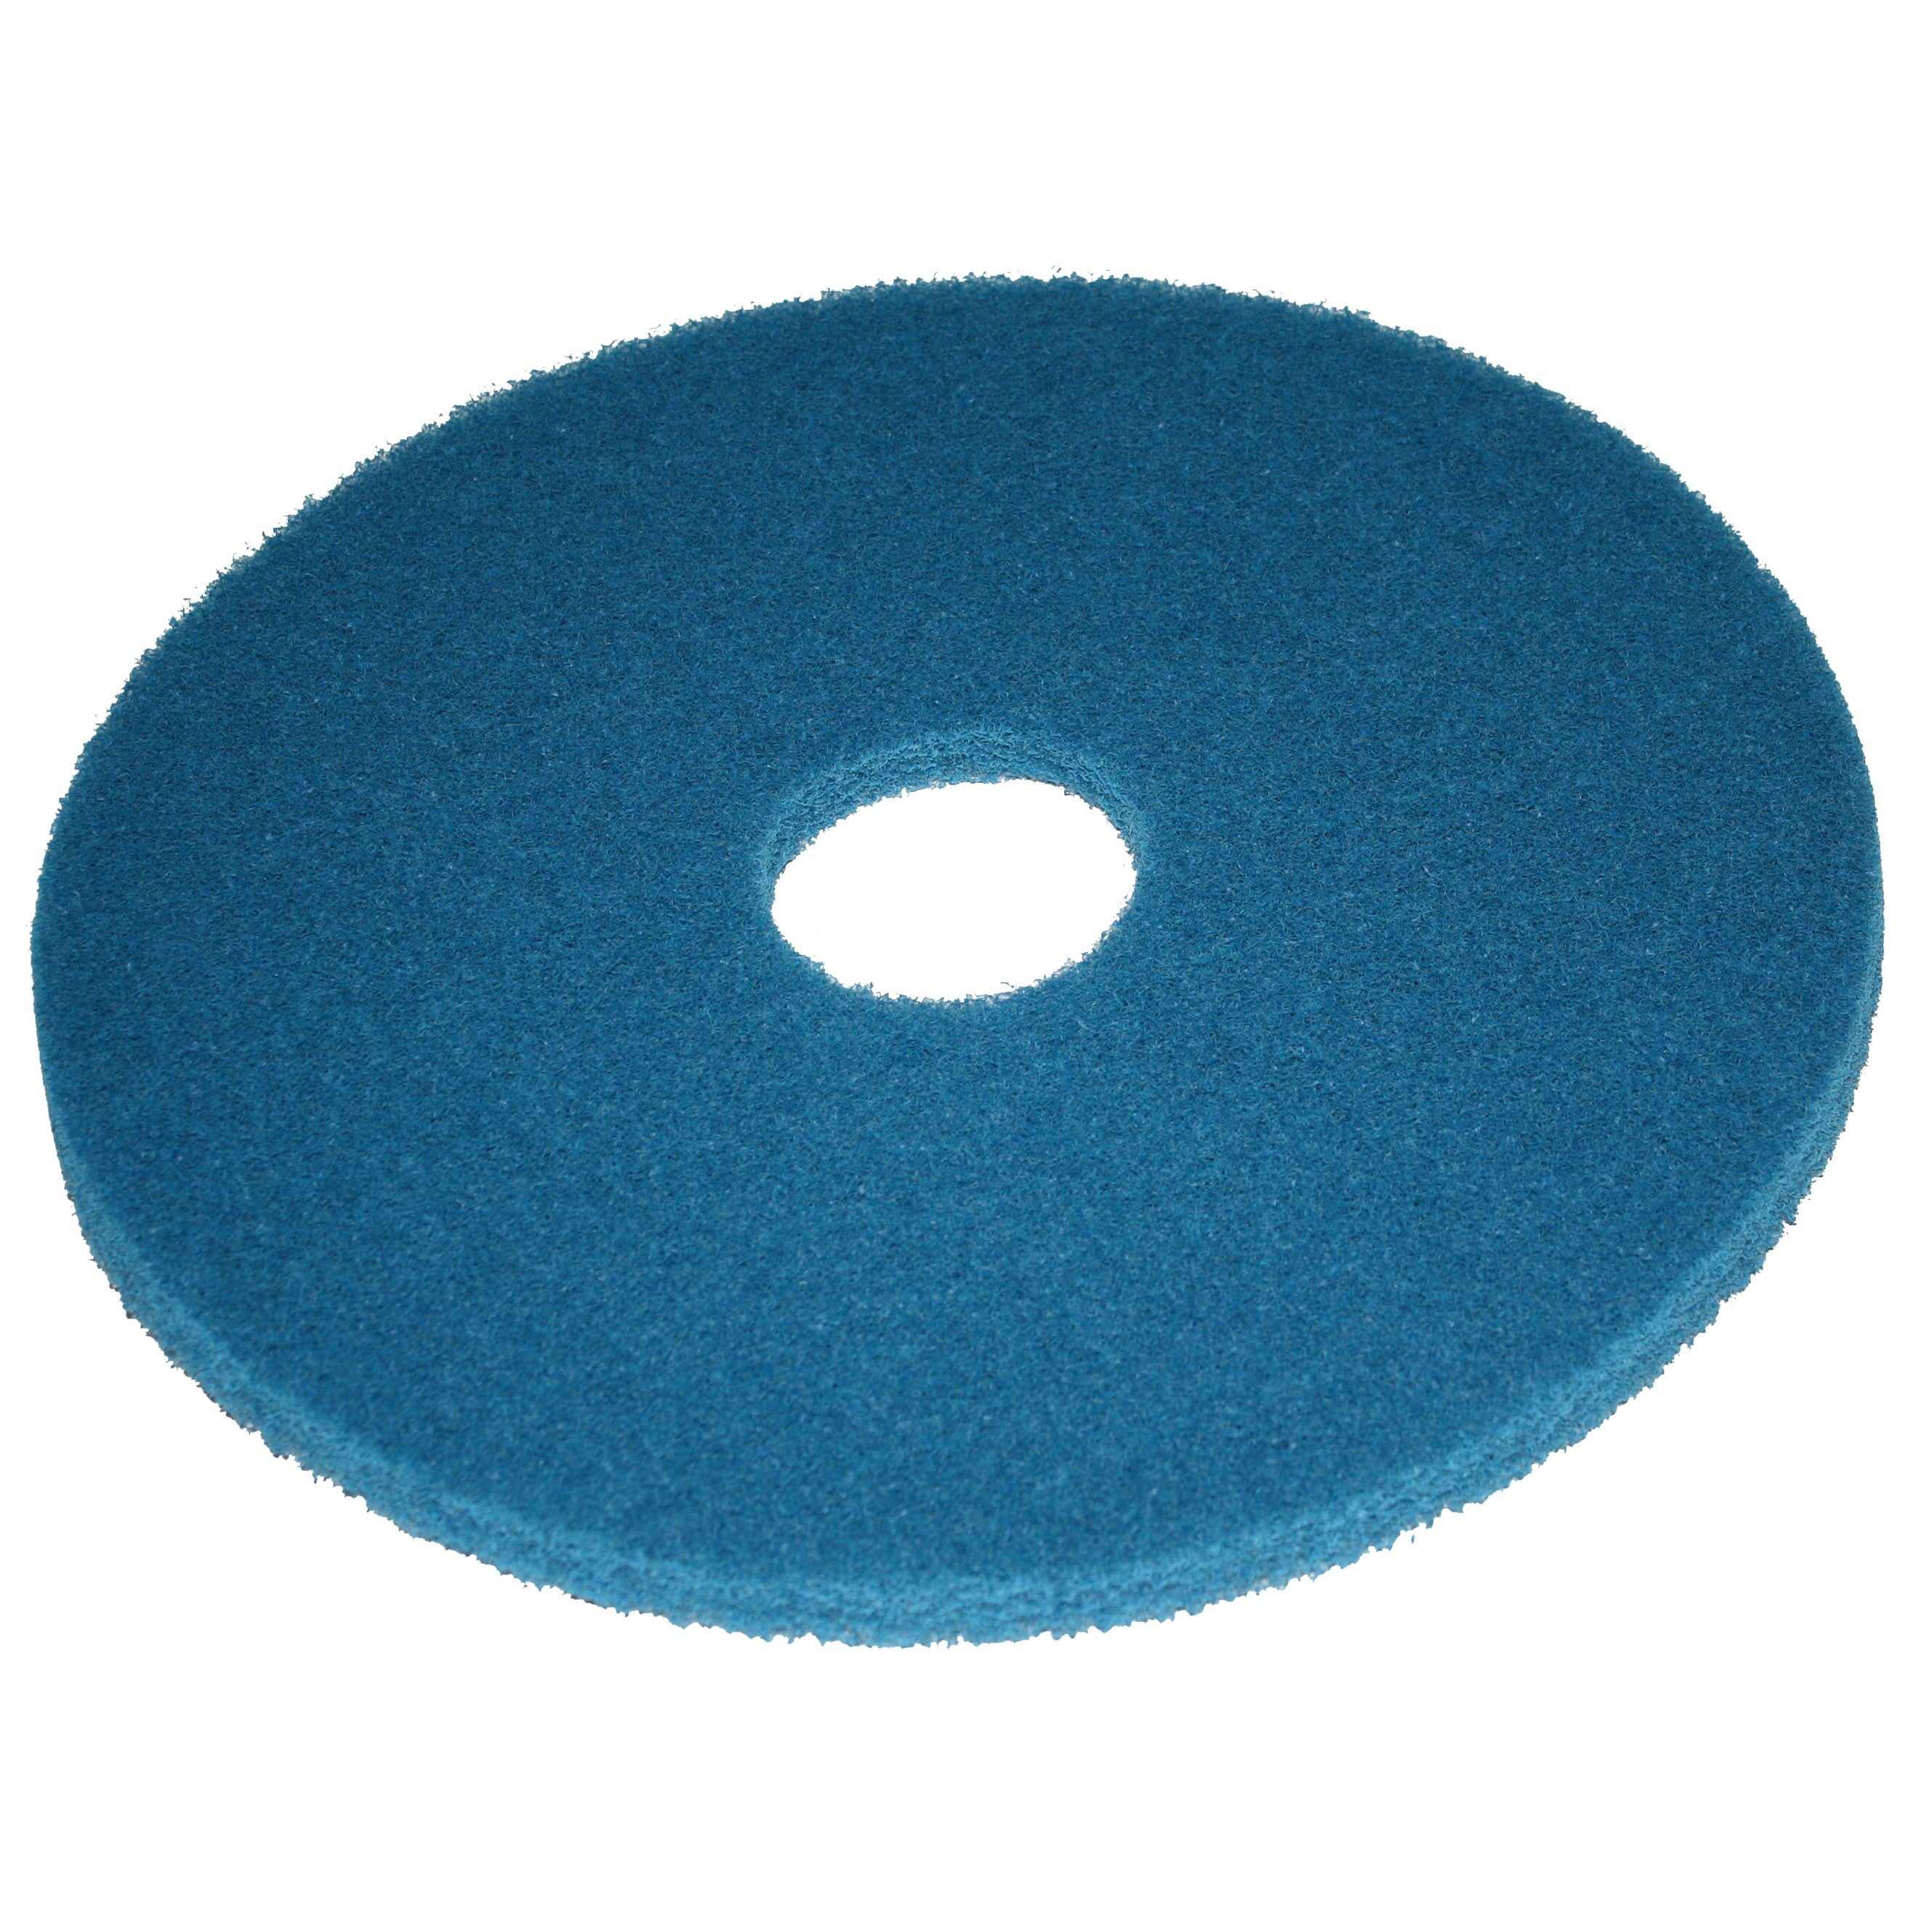 Pad bleu, Ø 457 mm, polyester